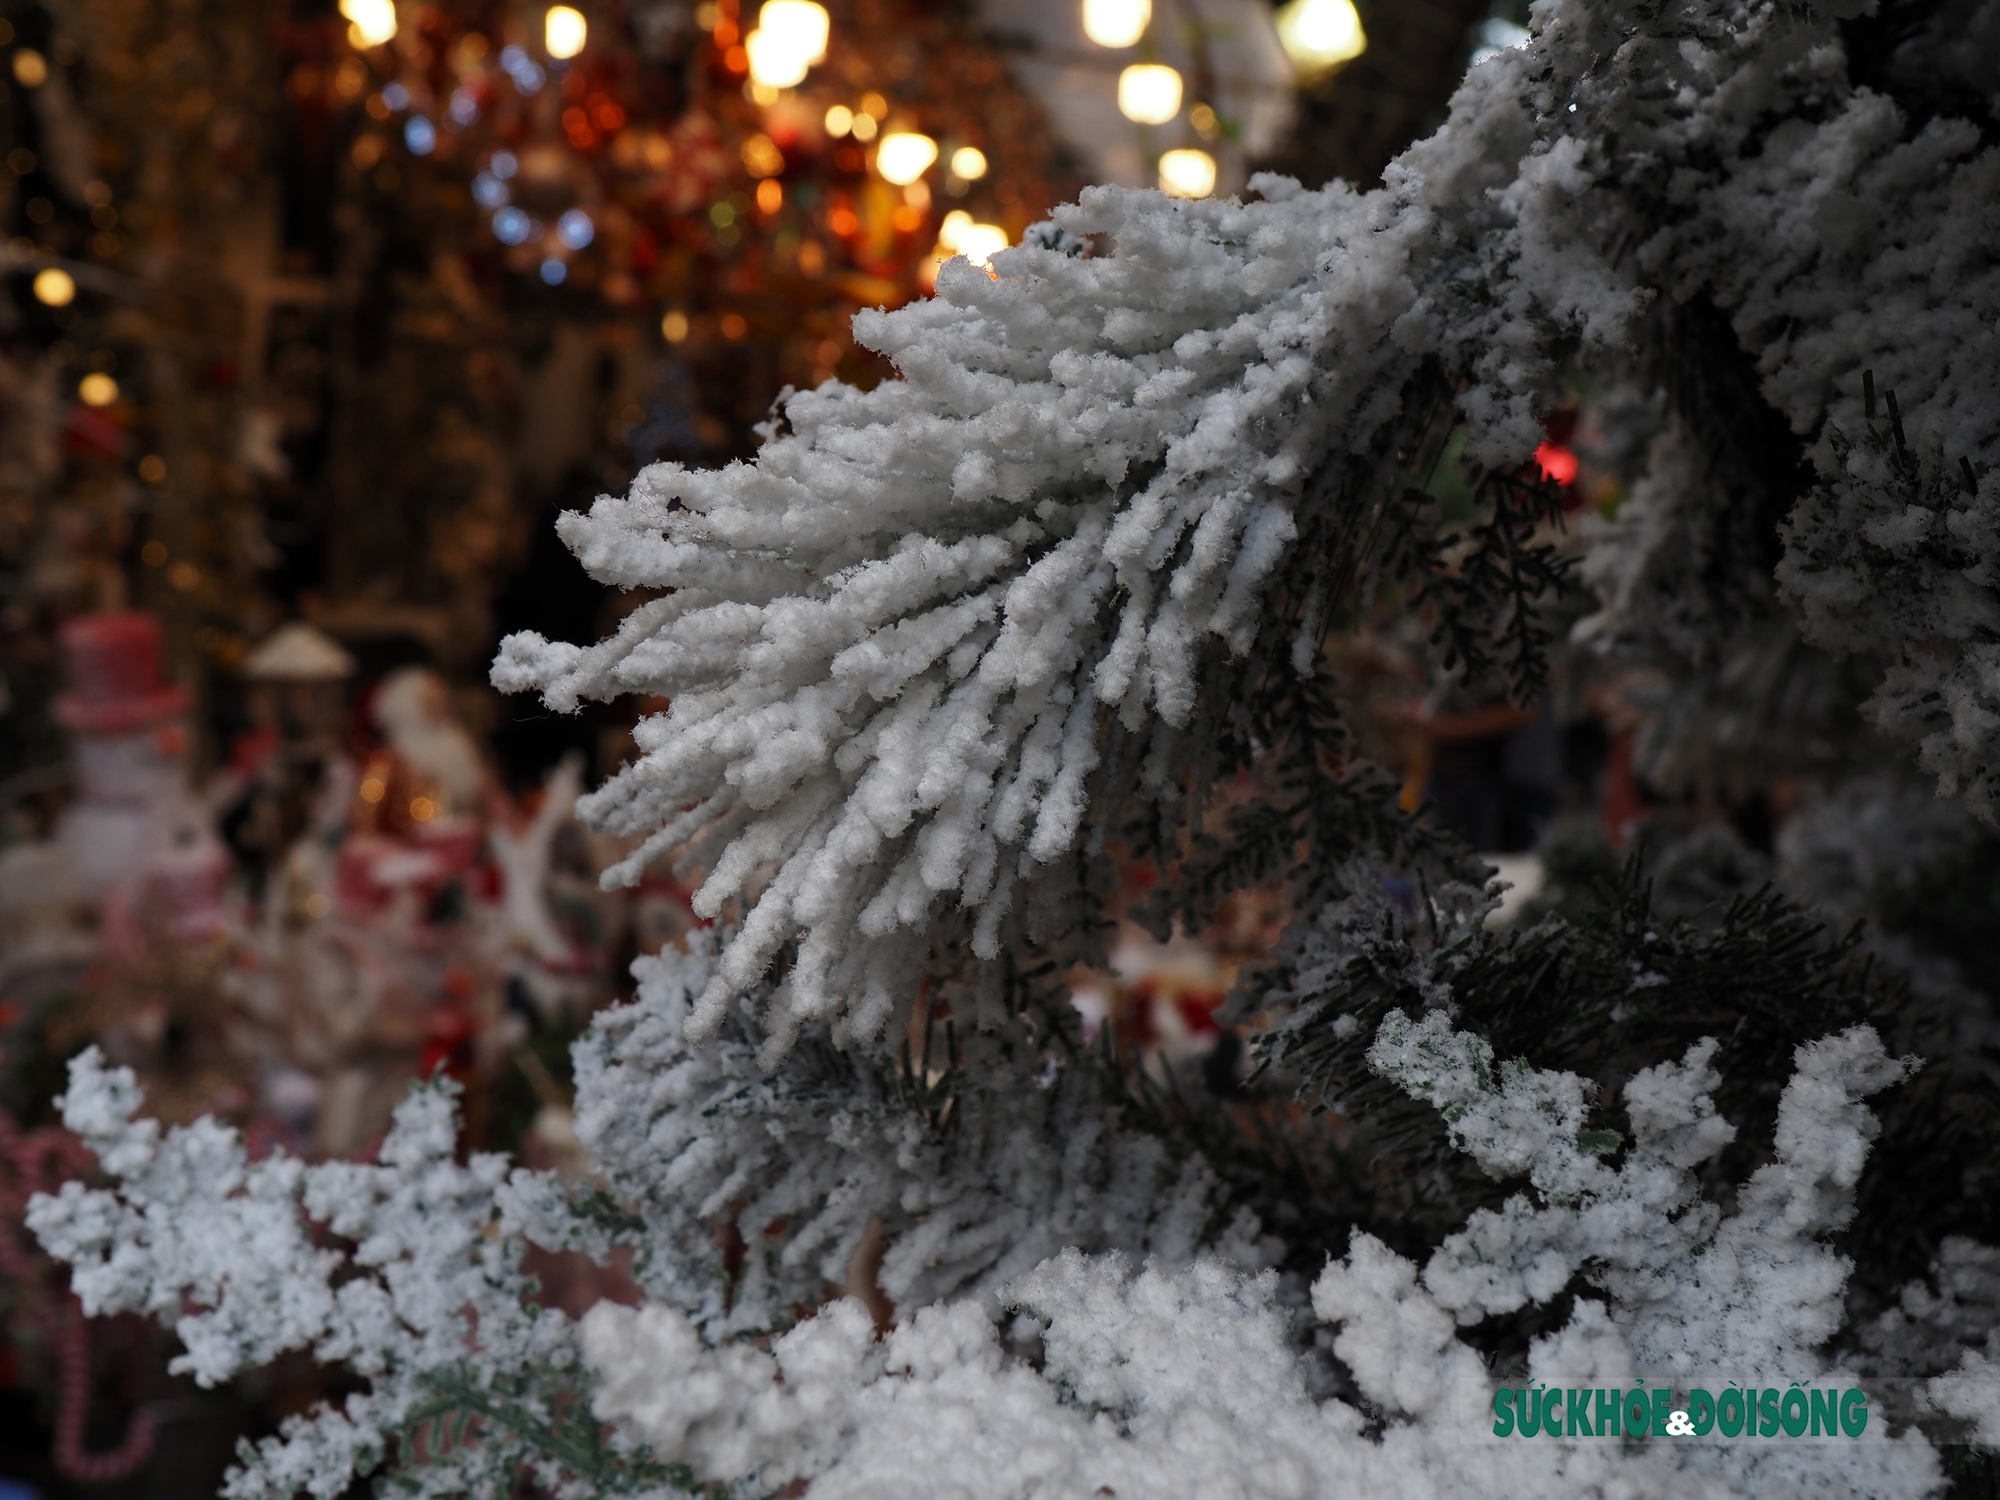 Tuyết phố cổ đem đến cho bạn cảm giác đặc biệt và kỳ diệu trong mùa lễ hội Giáng sinh. Những con phố rực rỡ đèn, những hàng cây thông trang trí lấp lánh và những đường cong của phố cổ phủ lên màu trắng xóa của tuyết làm bạn mê đắm. Đến và cảm nhận sự yên bình và tuyệt vời của tuyết phố cổ trong mùa lễ hội.